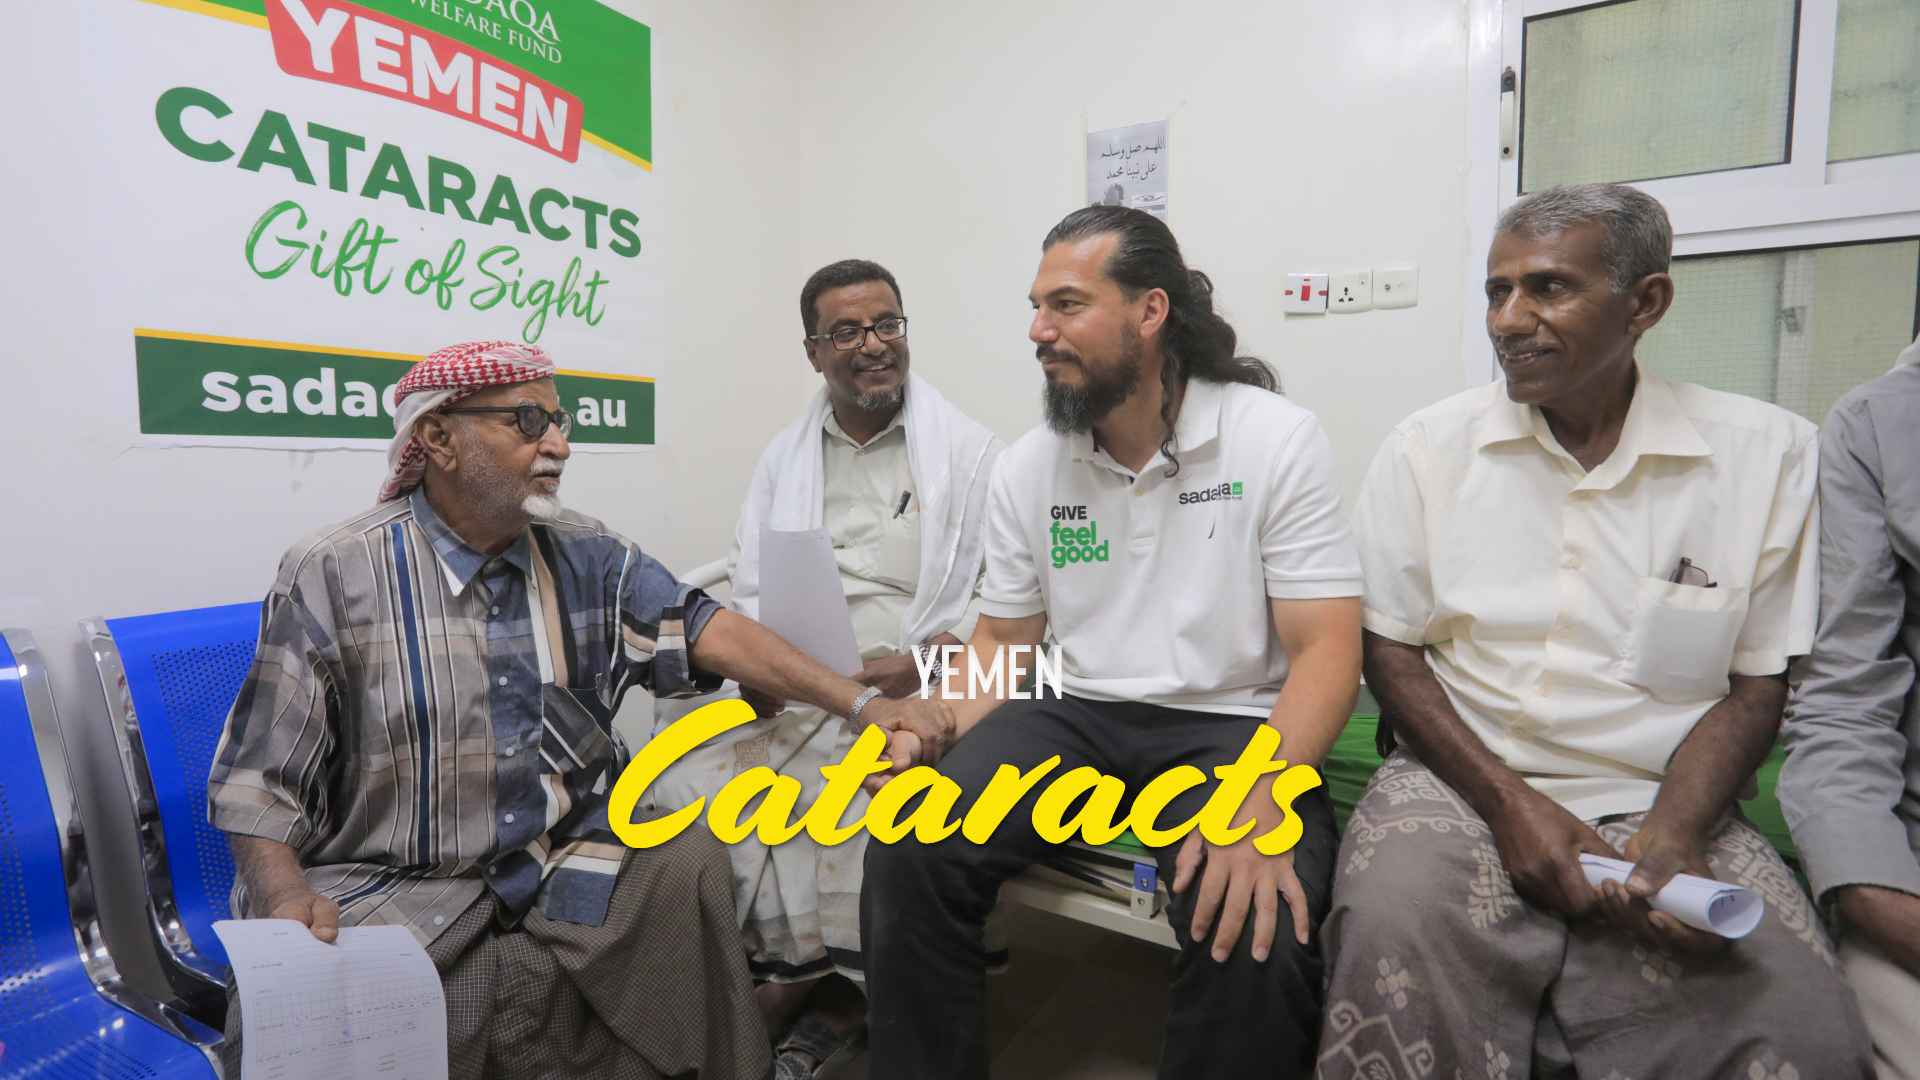 Yemen Cataract Surgeries